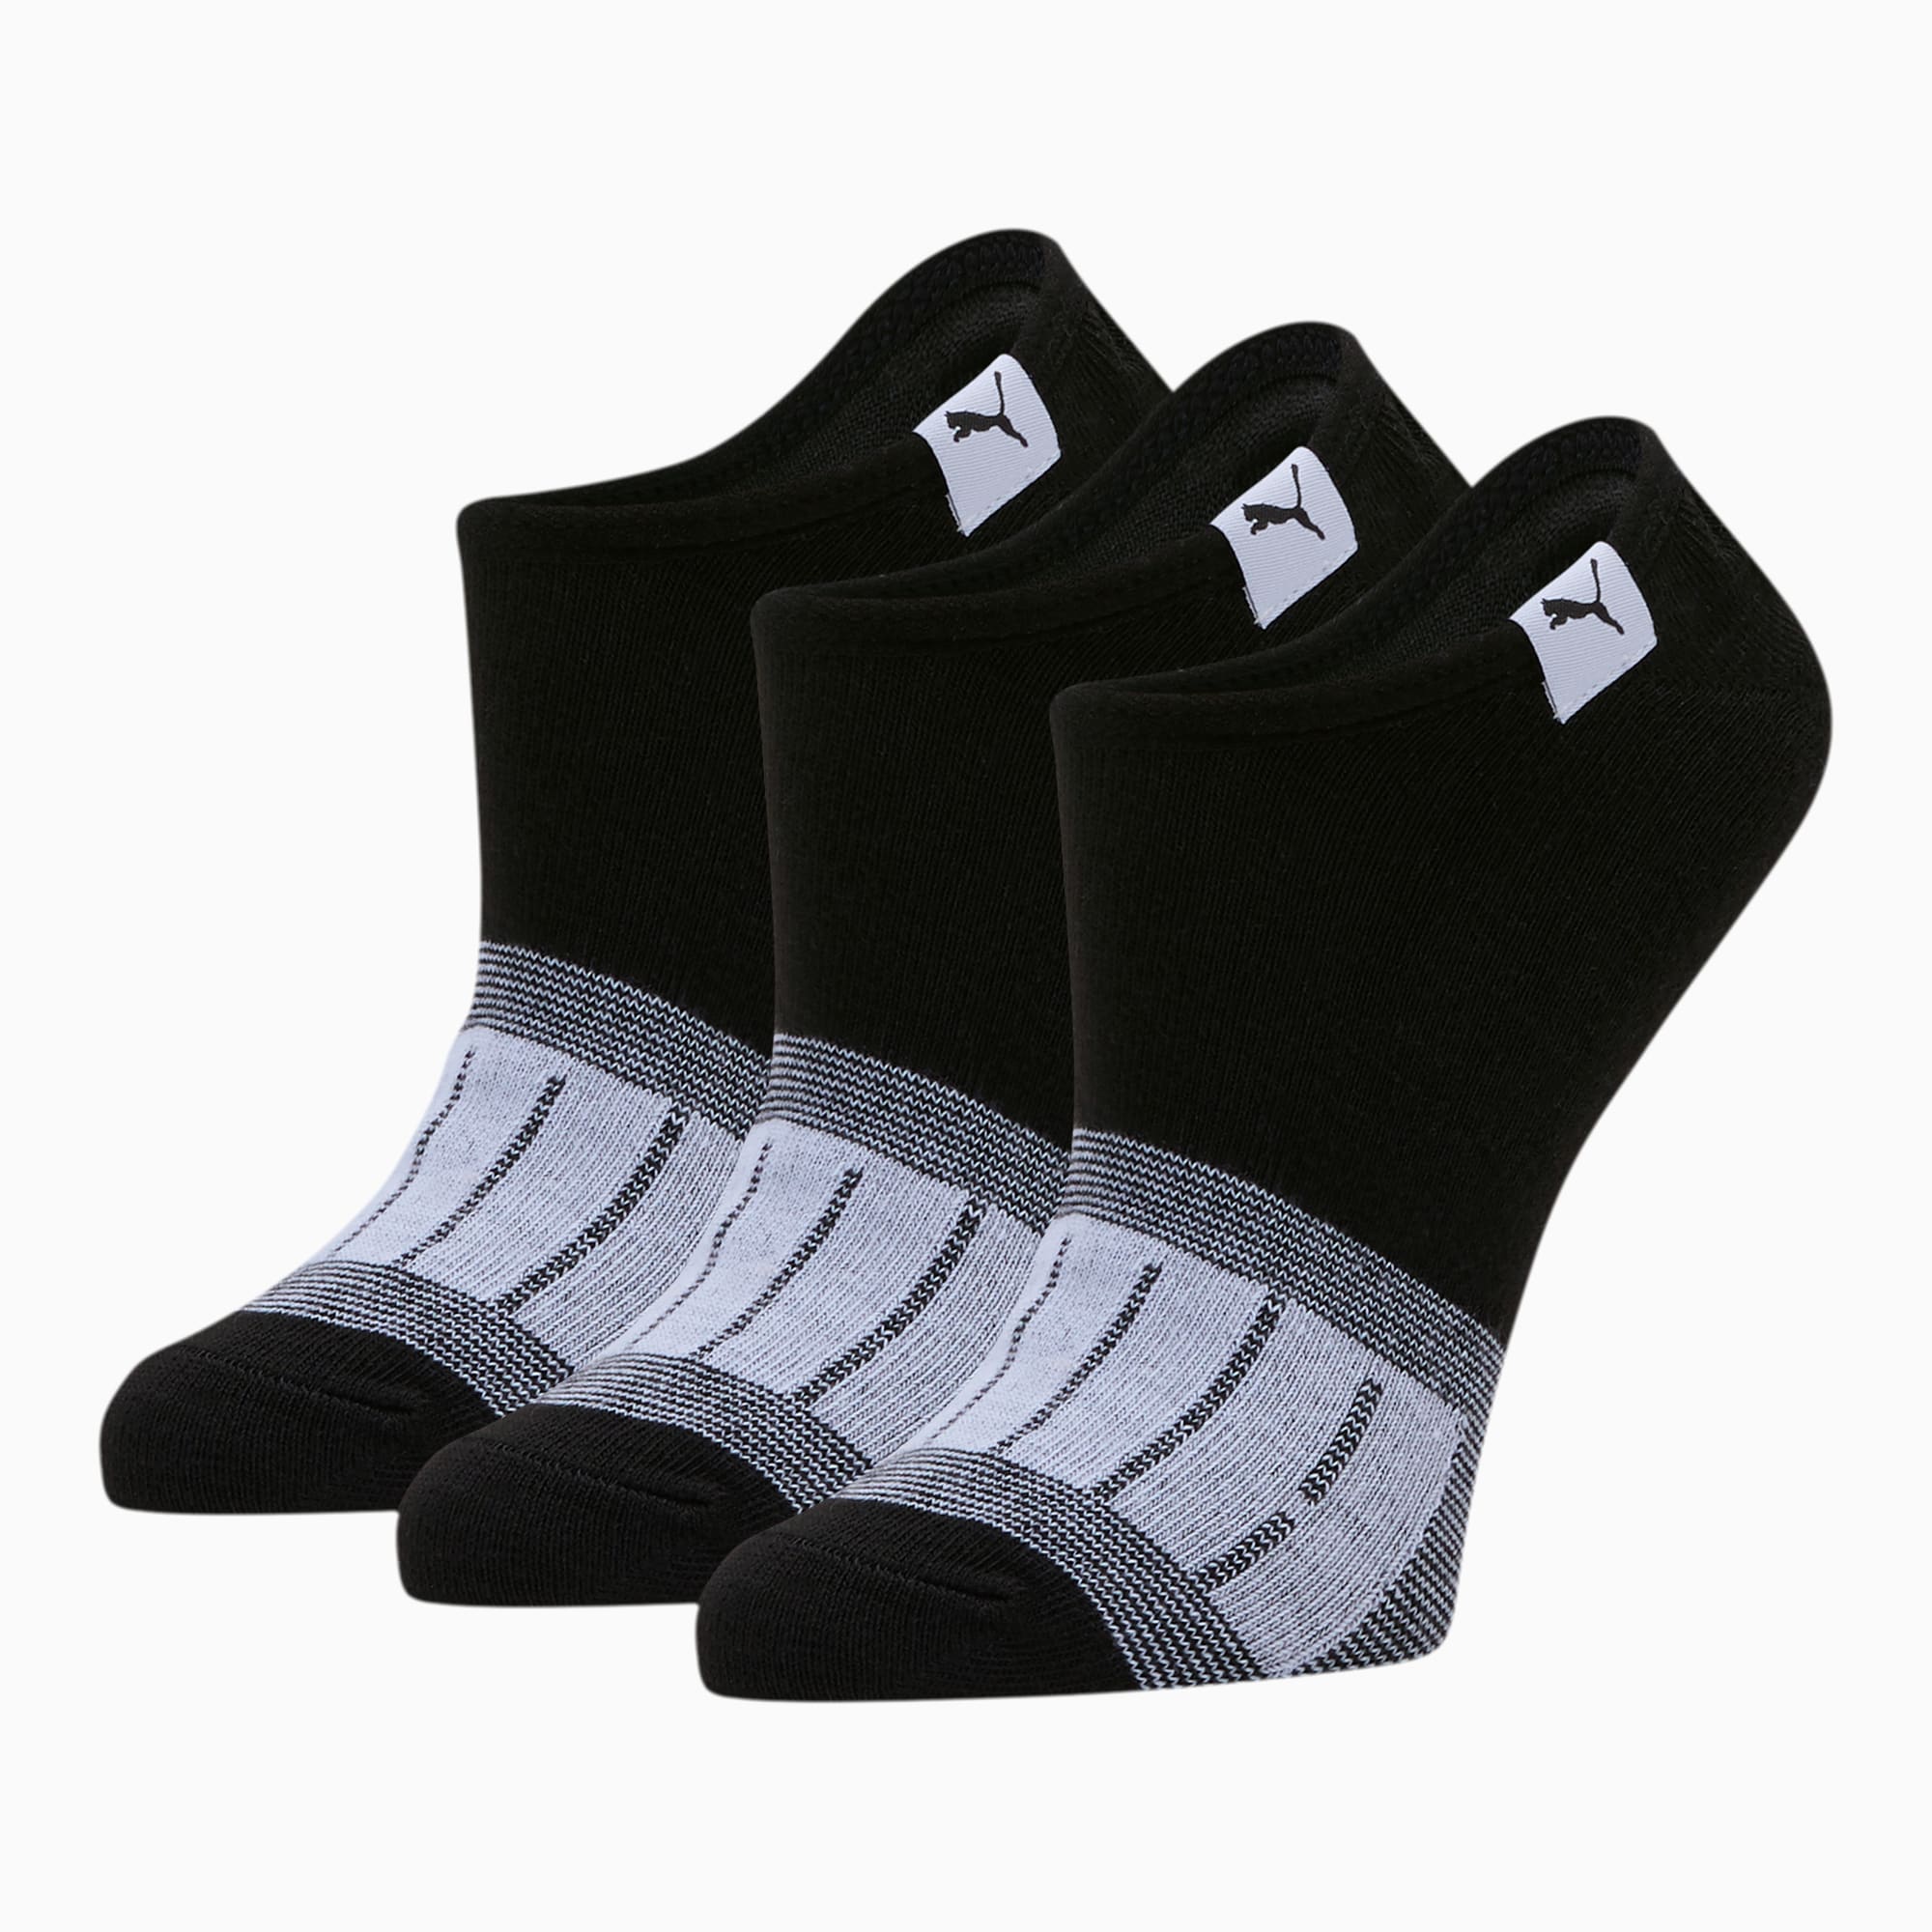 puma womens socks, biggest sale Hit A 76% Discount - www ...